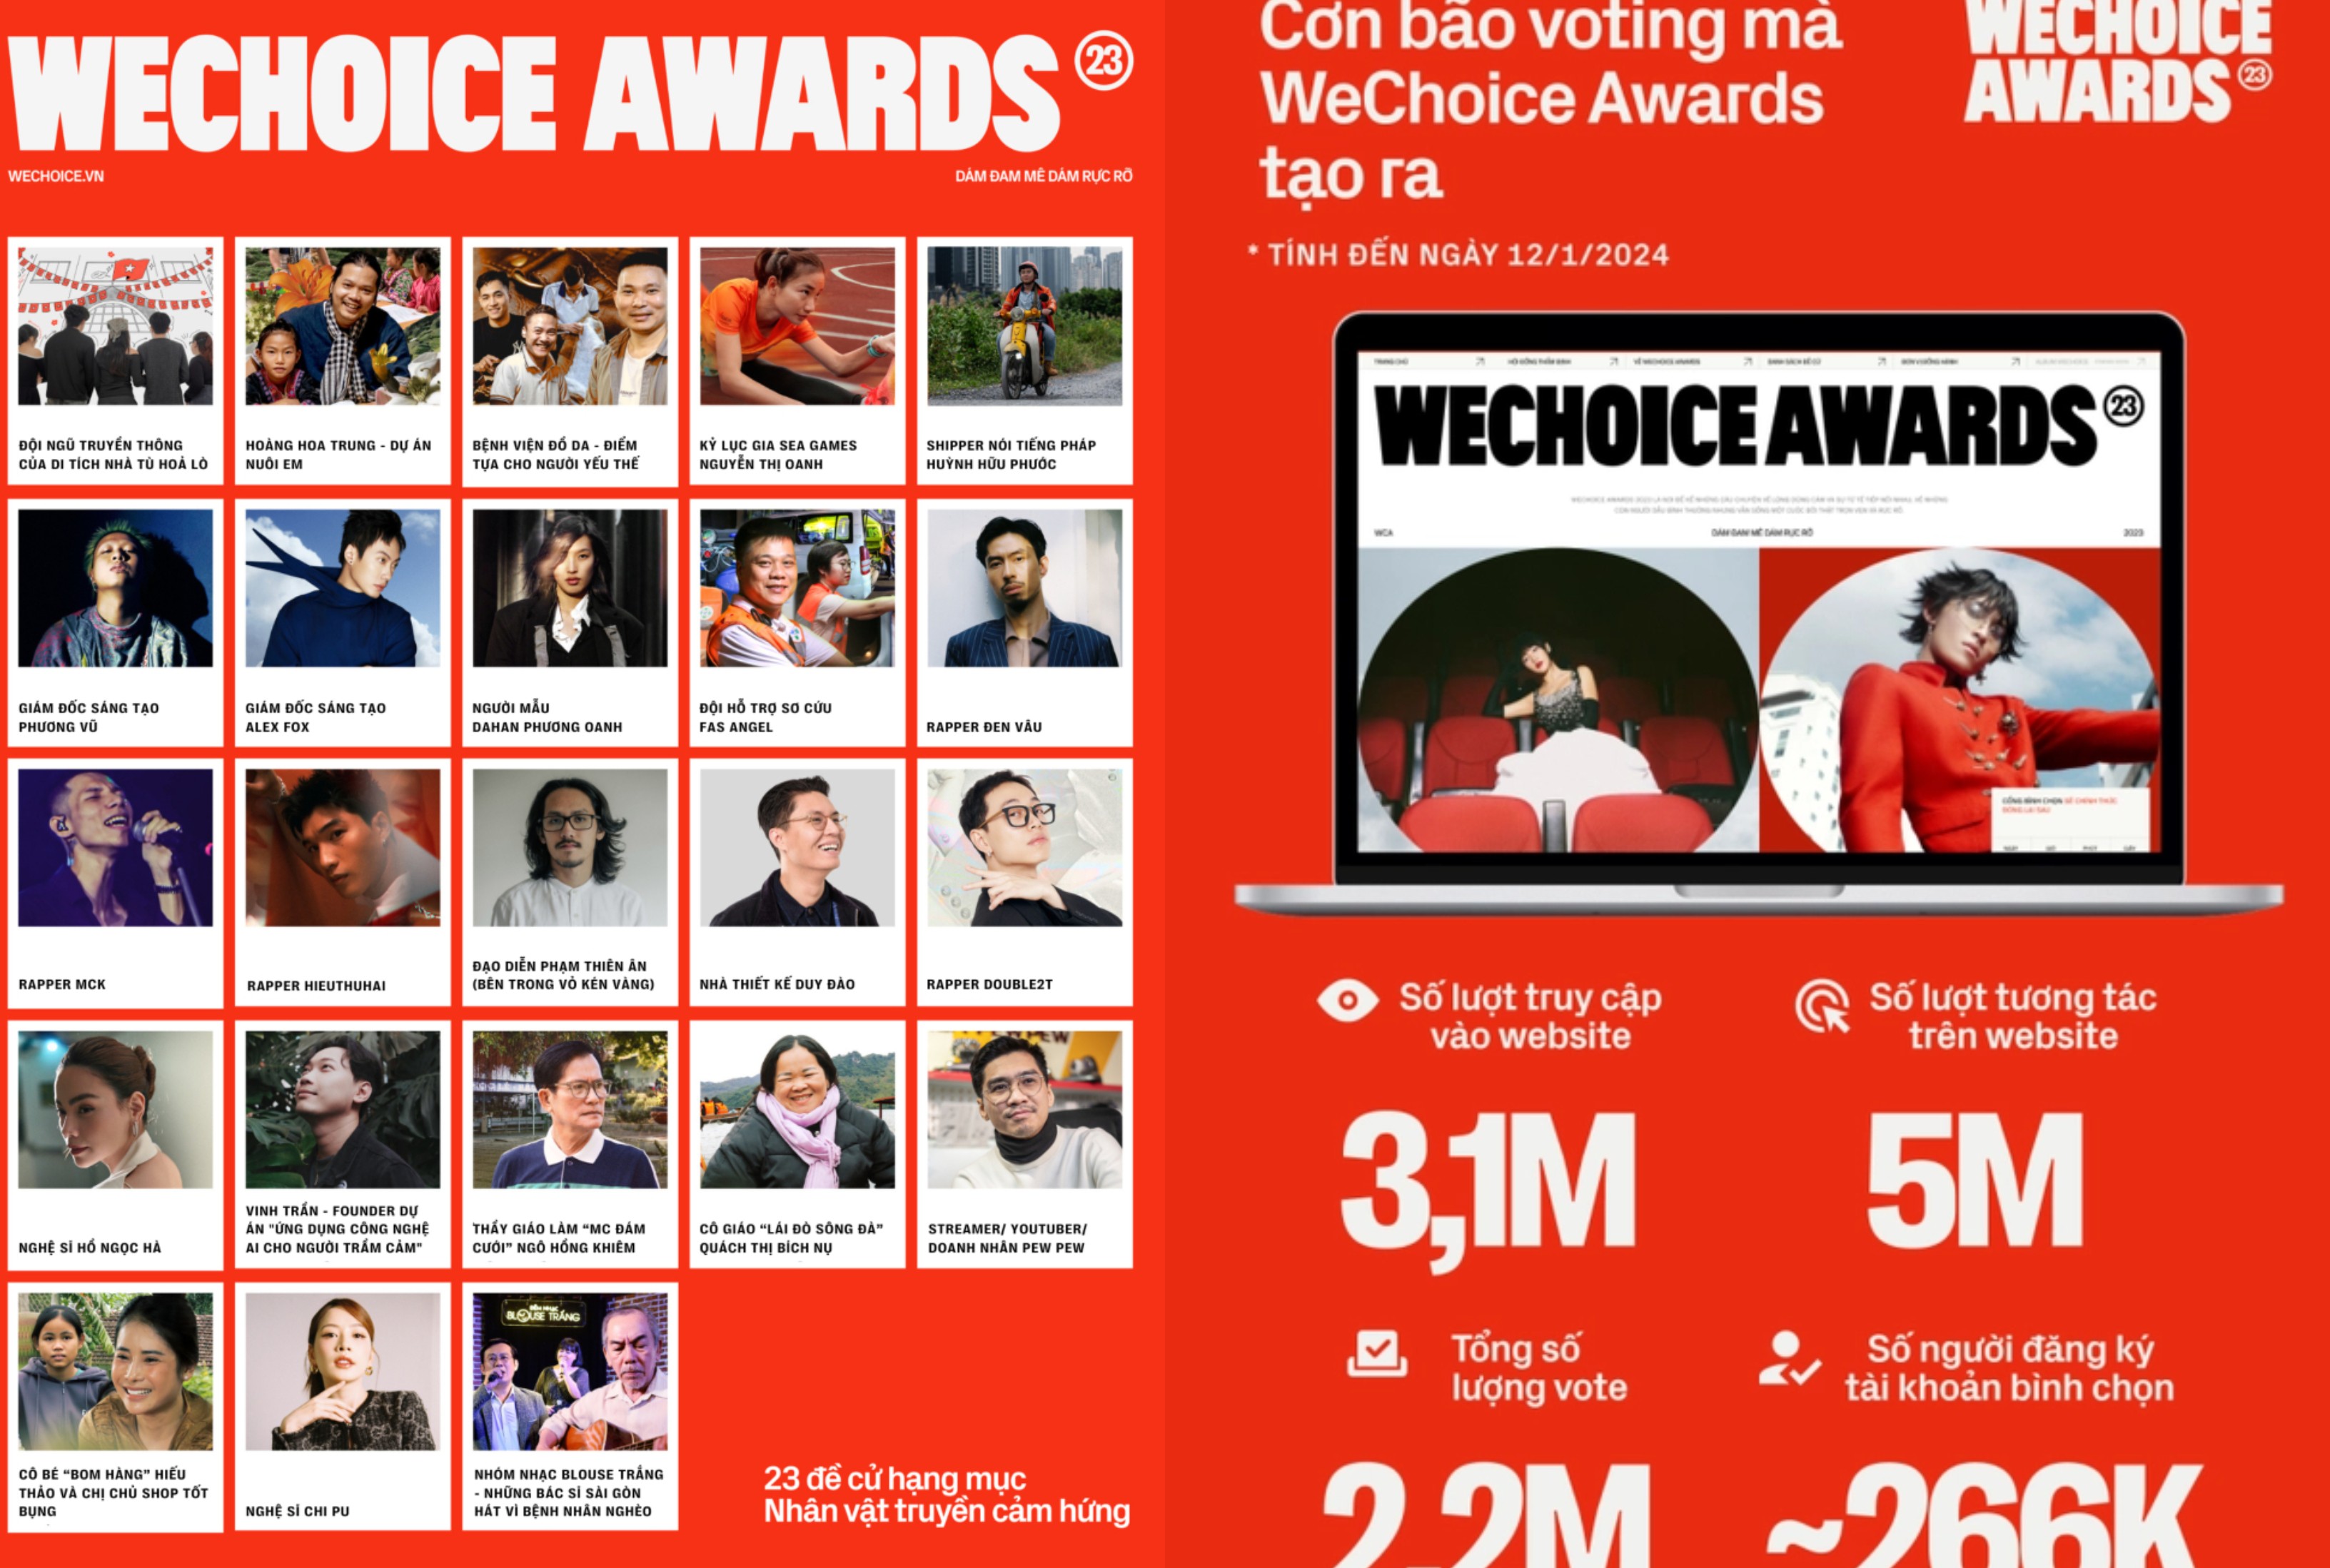 Giải thưởng Wechoice 2023 trở lại với chủ đề “Dám đam mê dám rực rỡ” thu hút nhiều khán giả bình chọn